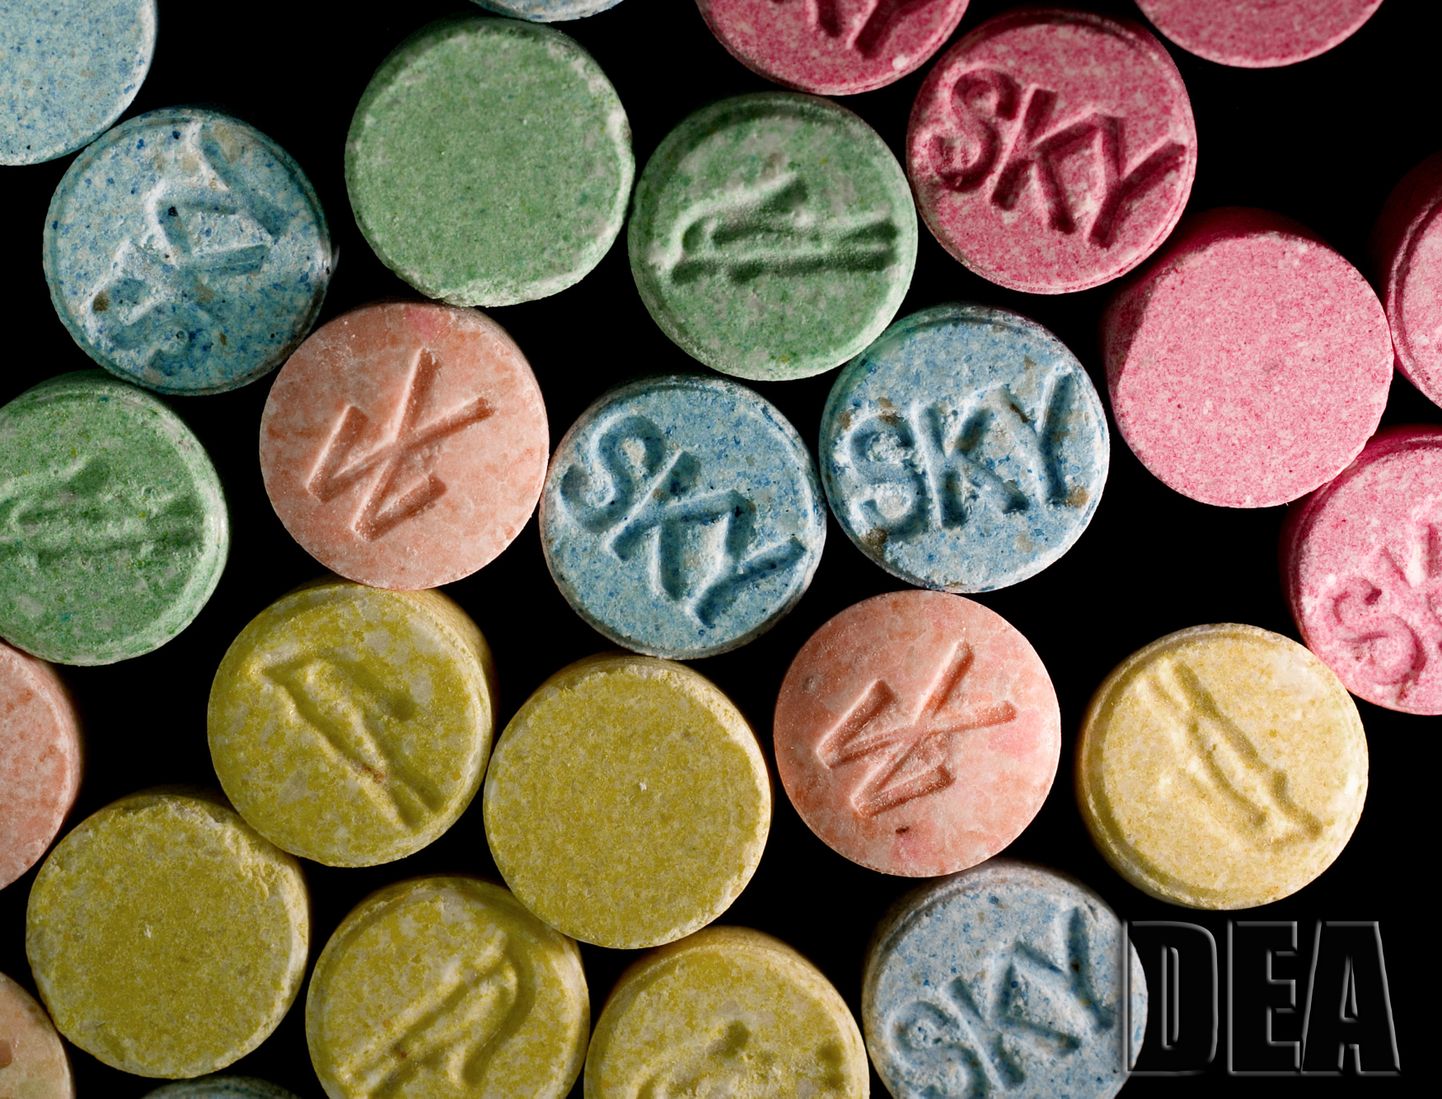 MDMA-d sisaldavad ecstasy tabletid. Foto on illustratiivne.